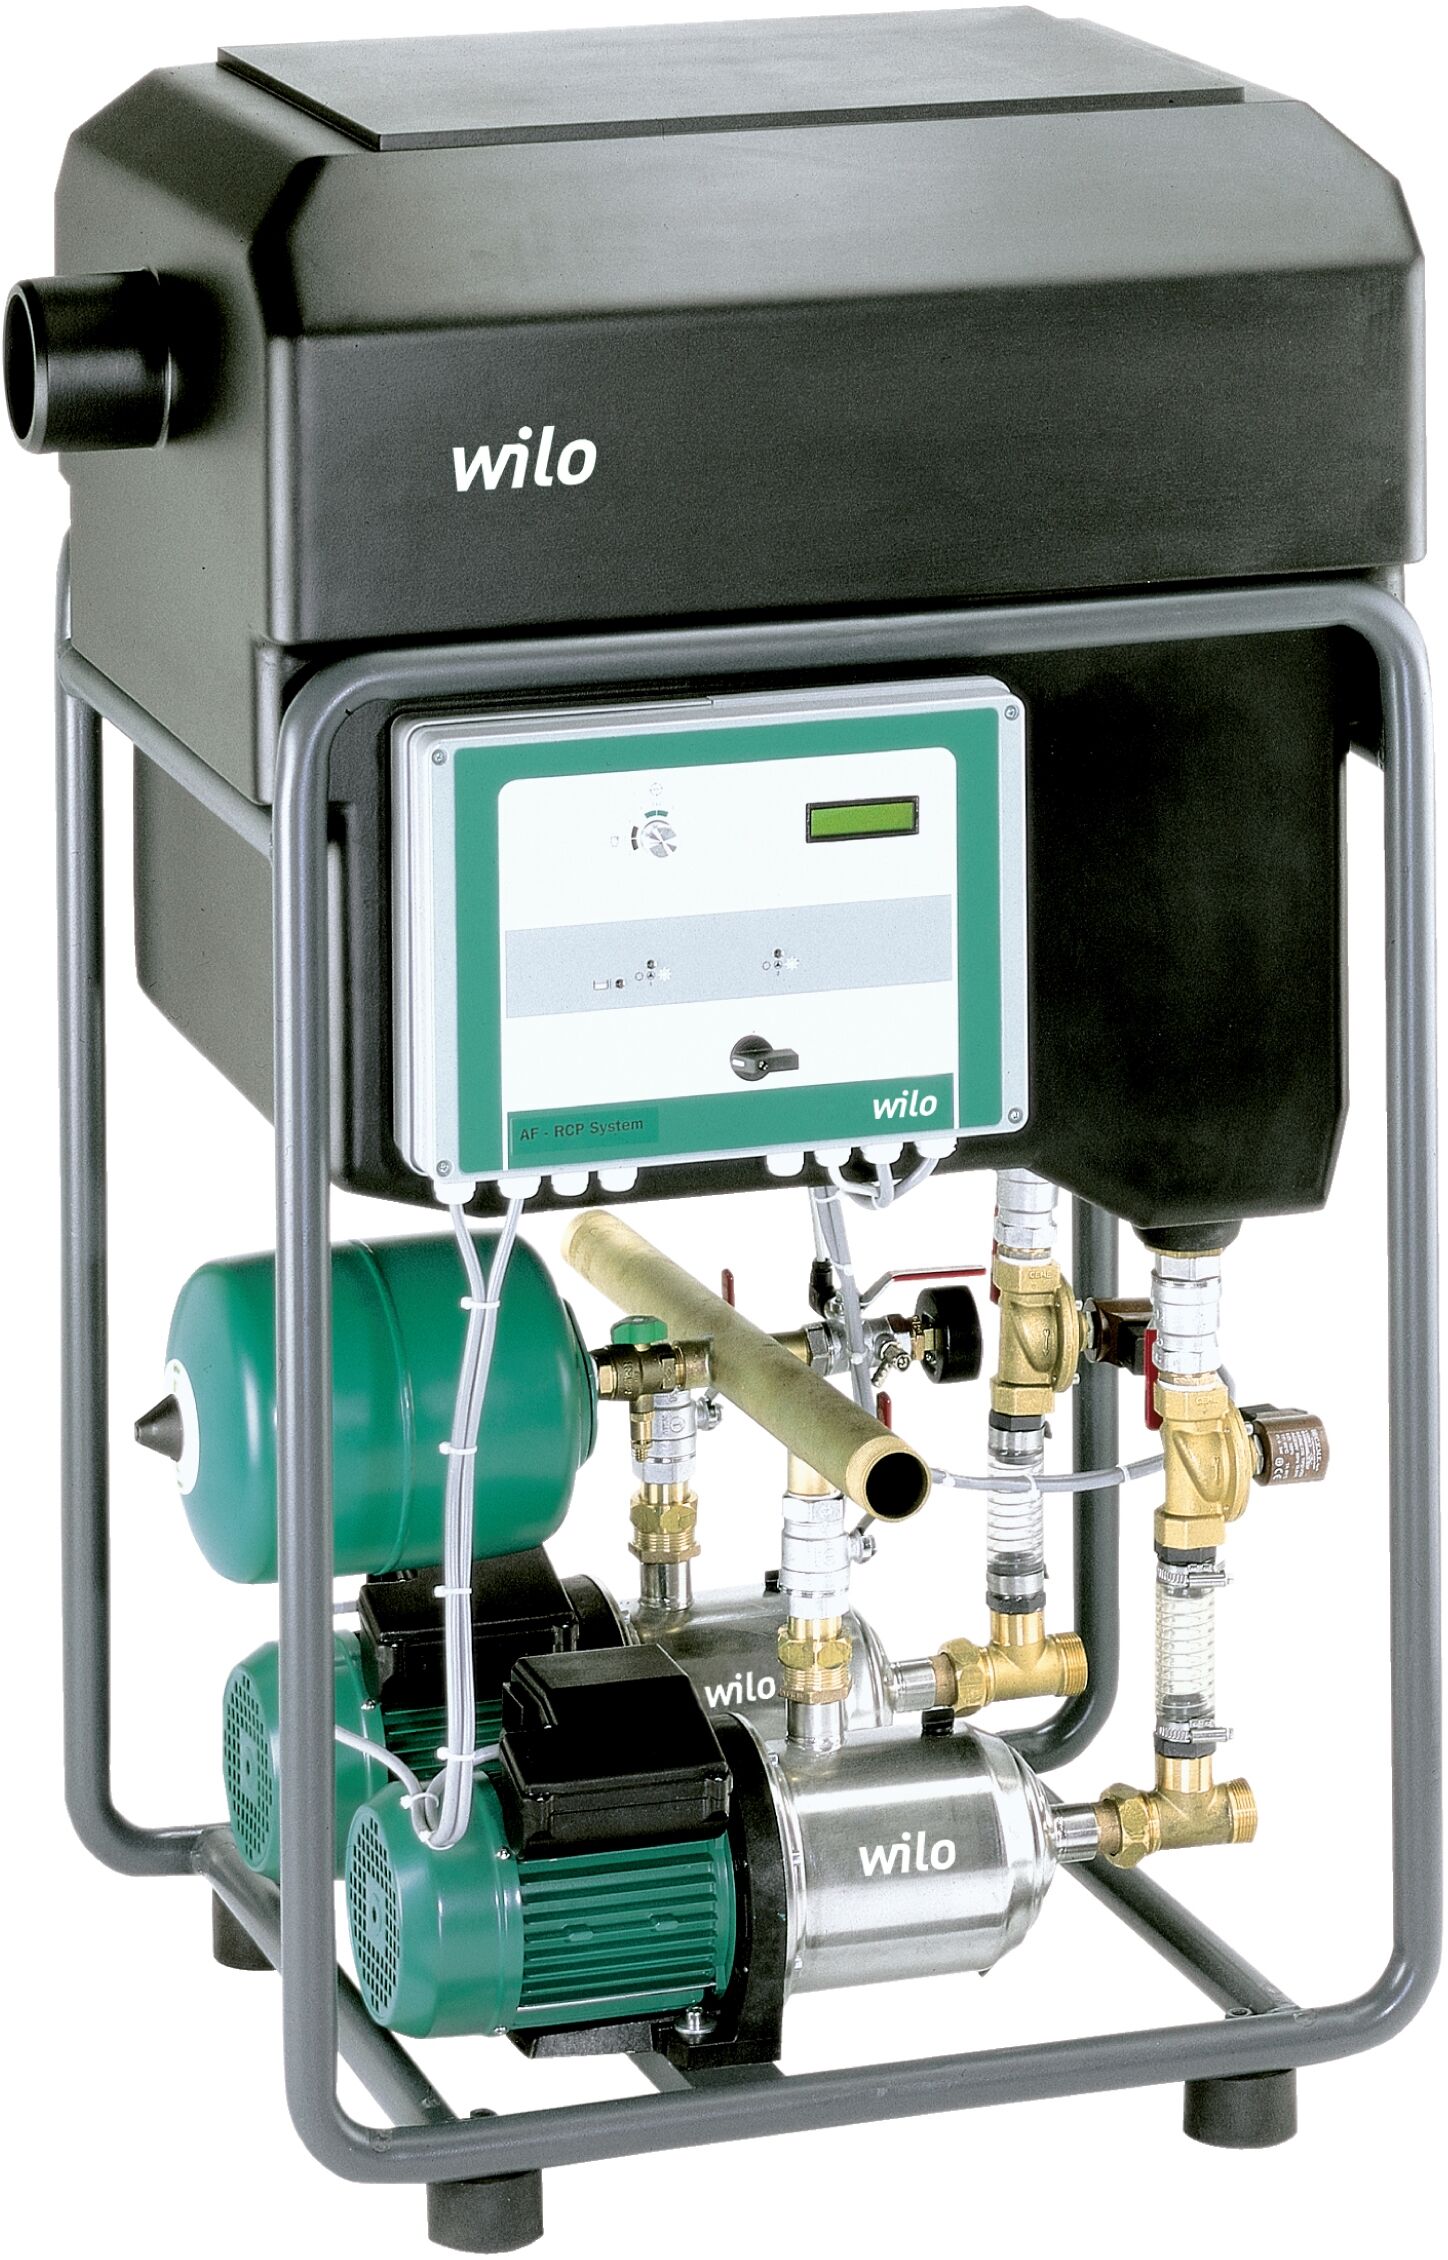 Wilo Regenwasser-Nutzungsanlage 2531206 604, 0,75 kW, 230 V